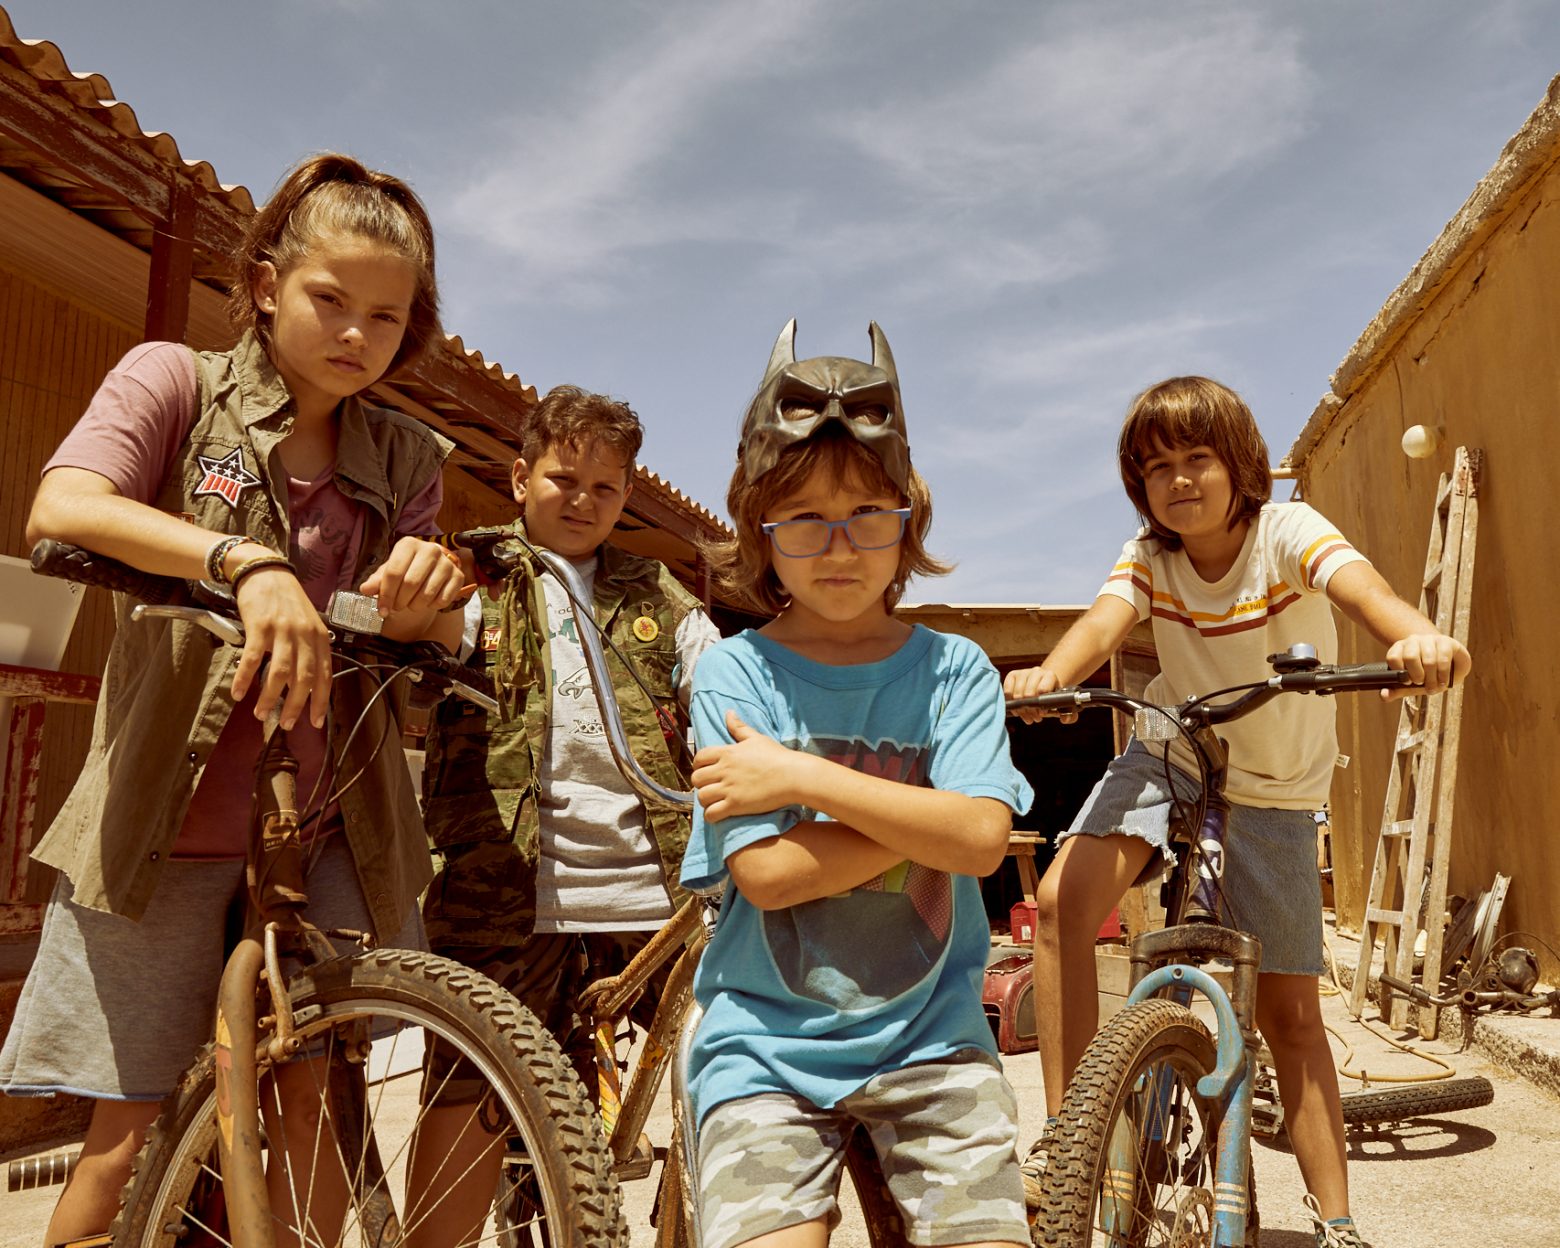 Κομάντα και Δράκοι – Επιστρέφει με ωριαία ταινία που μας γυρίζει στη μαγεία των παιδικών μας χρόνων